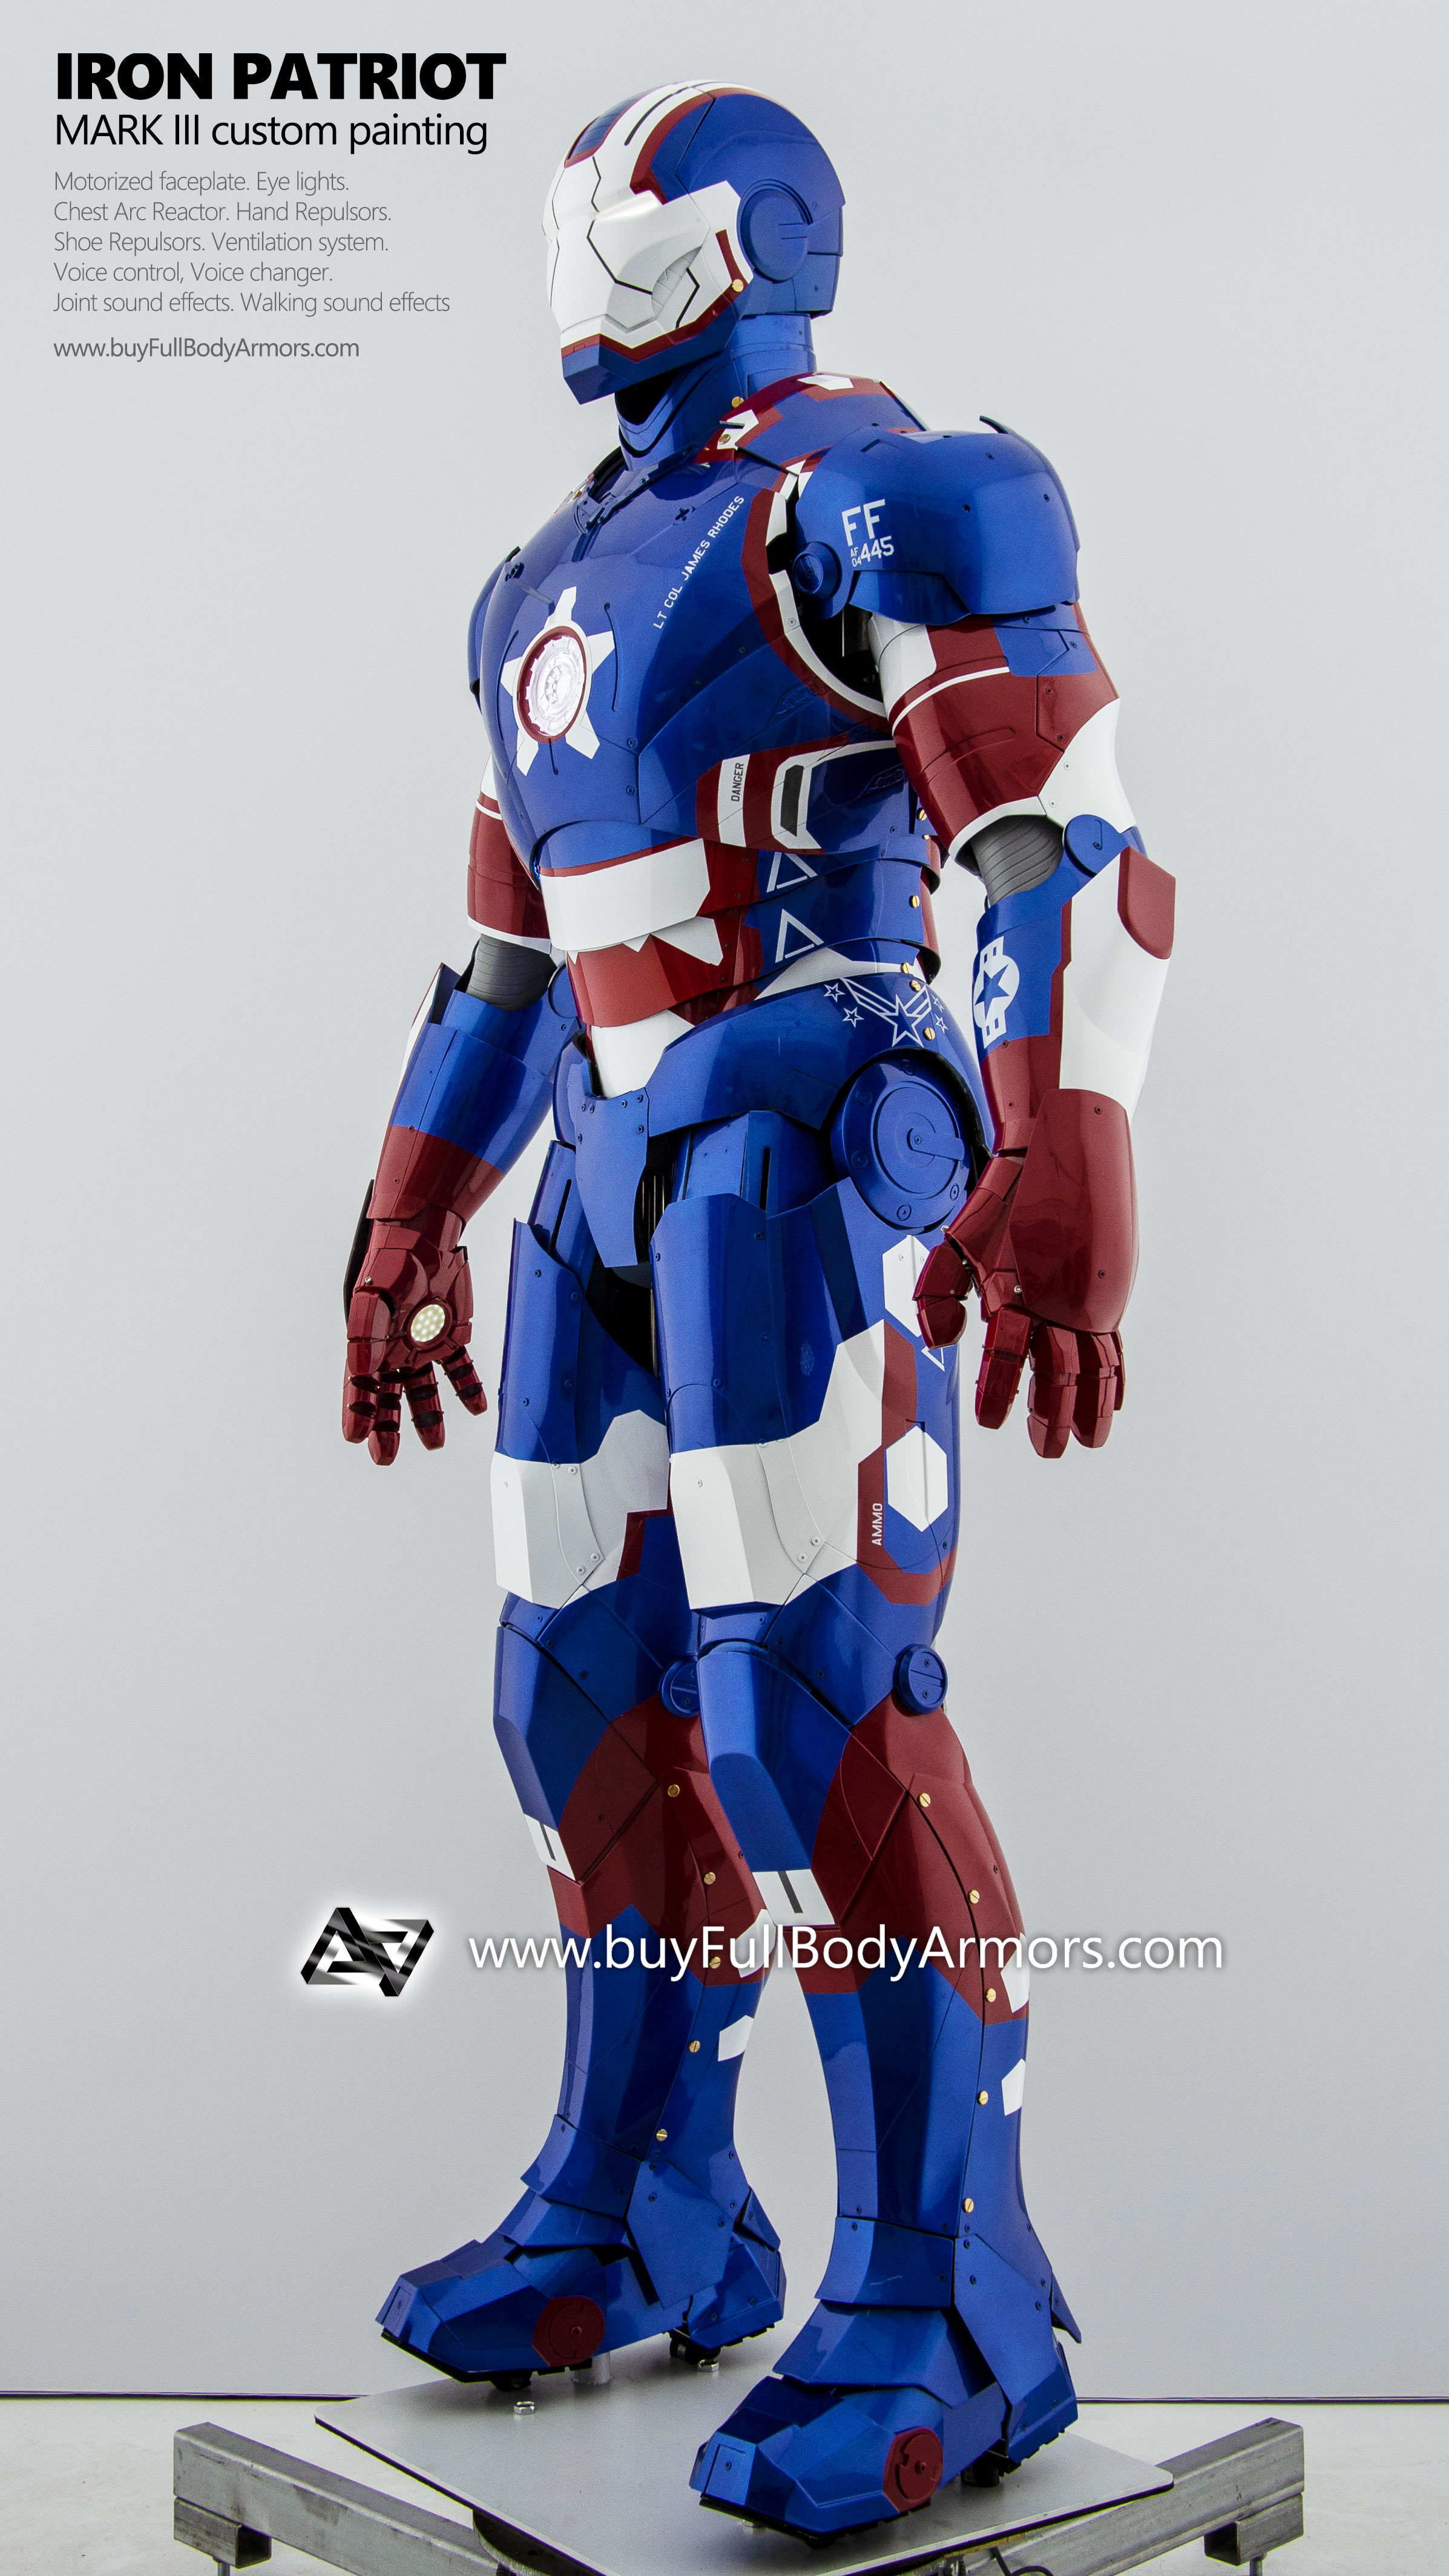 wearable Iron Patriot Iron Man Suit Mark 3 III Armor Costume 2